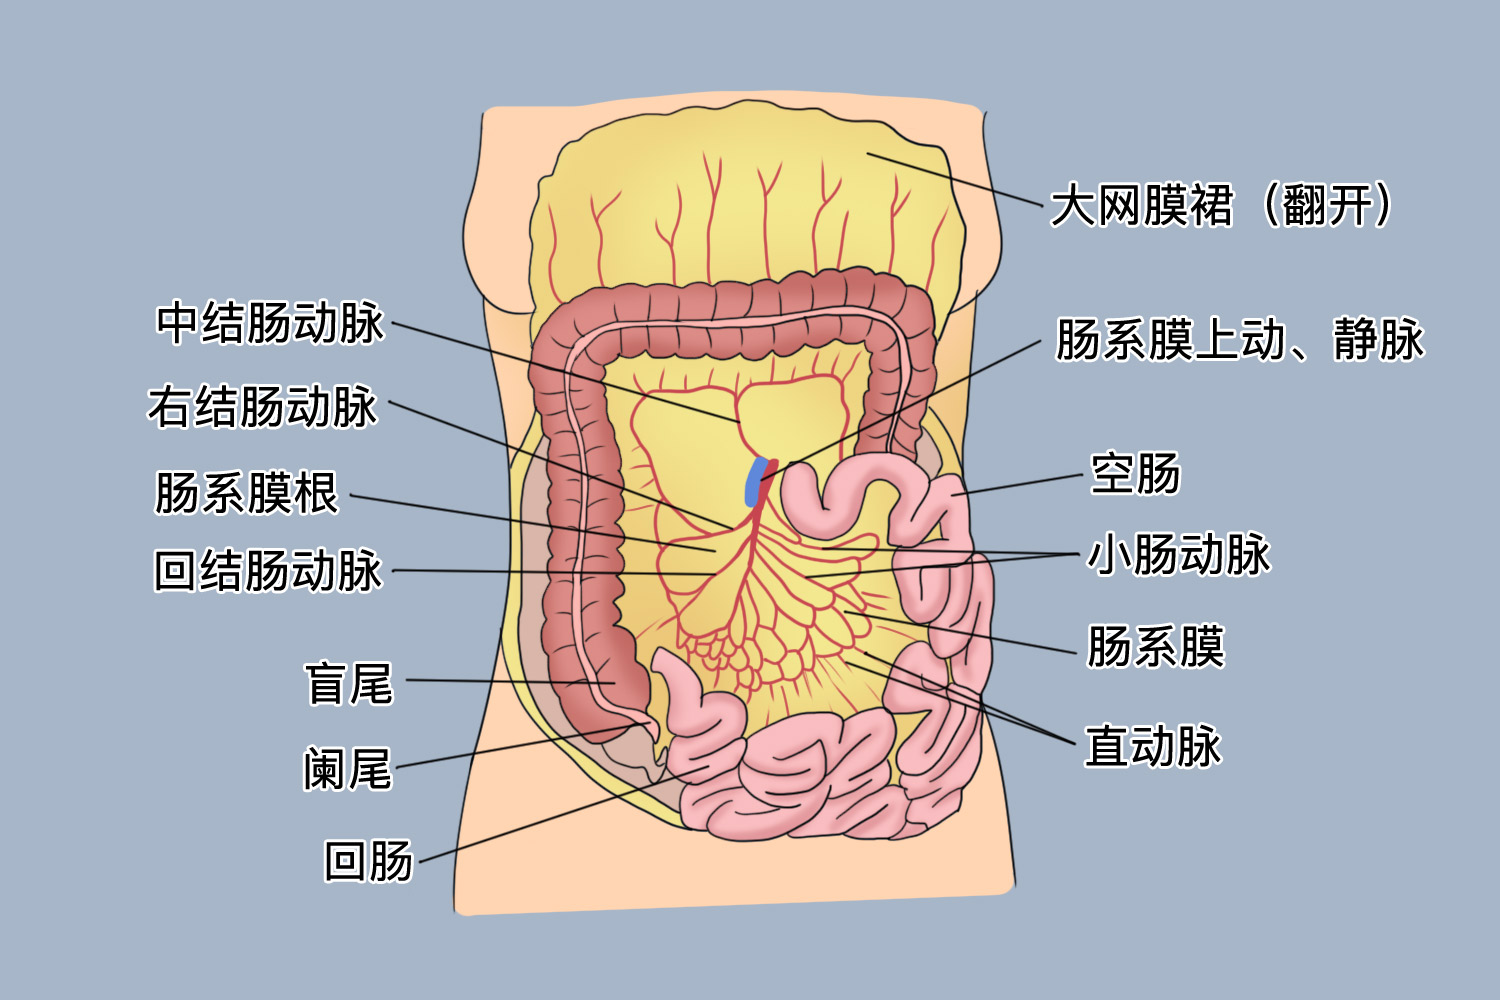 肠系膜根部位置图结构肠系膜由两层腹膜组成,其间有分布到肠袢的血管